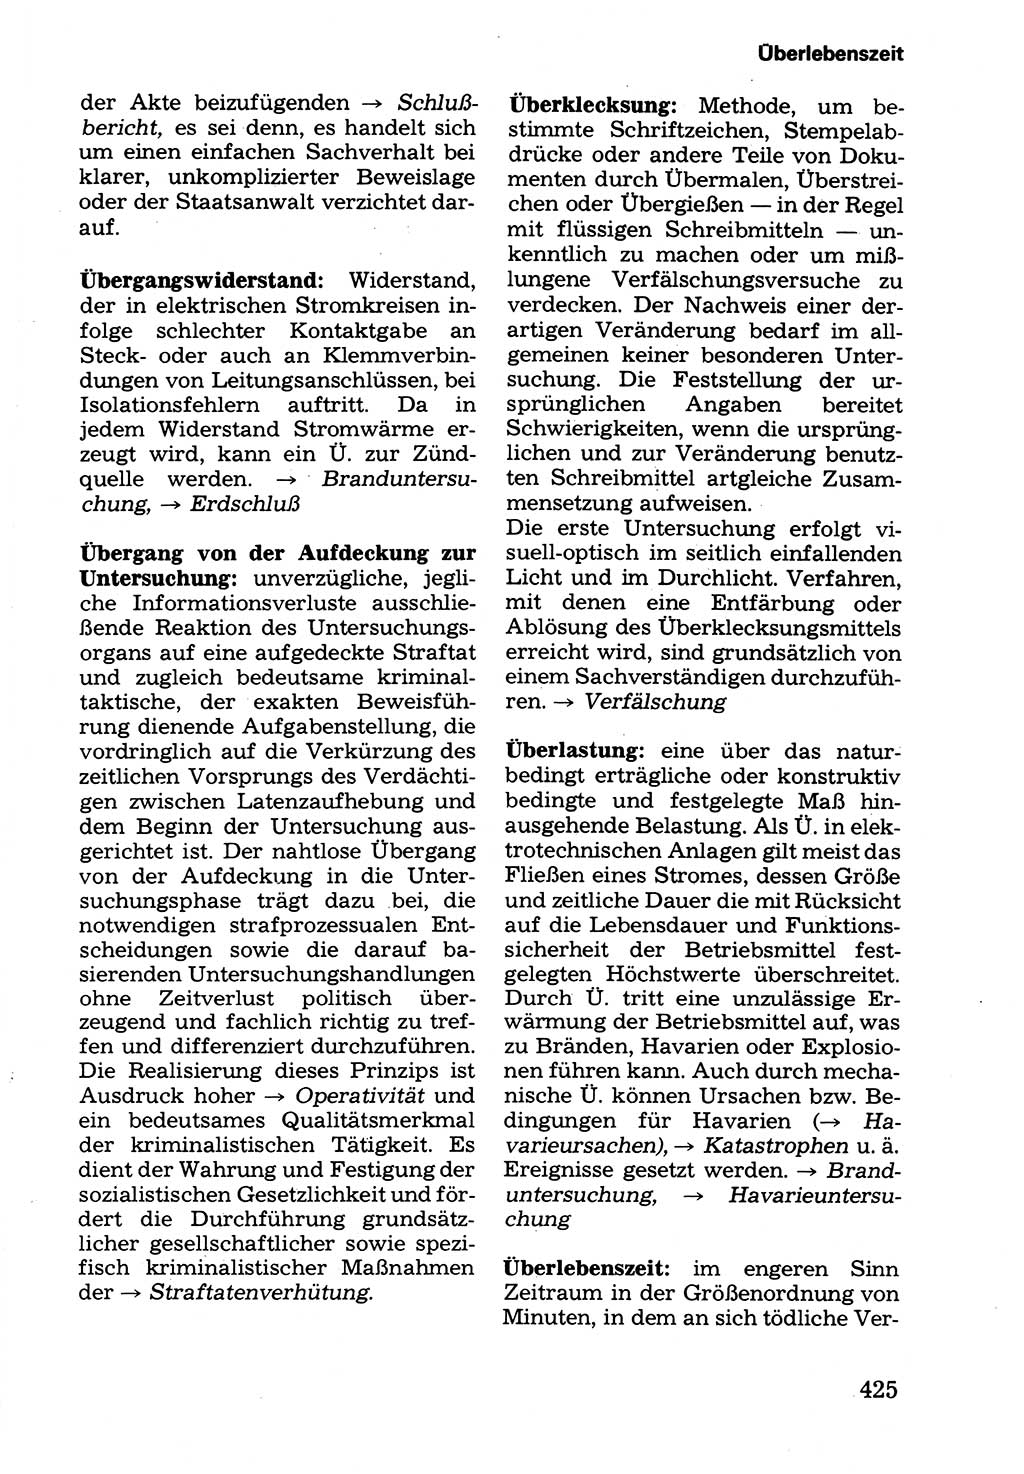 Wörterbuch der sozialistischen Kriminalistik [Deutsche Demokratische Republik (DDR)] 1981, Seite 425 (Wb. soz. Krim. DDR 1981, S. 425)